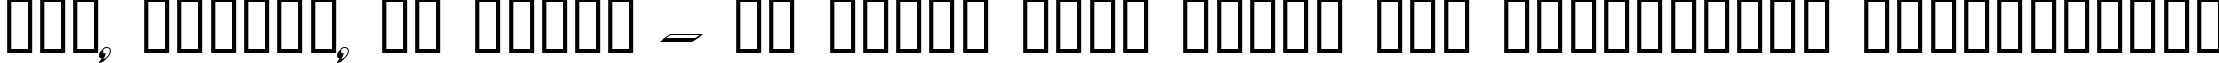 Пример написания шрифтом Dumbledor 2 3D текста на украинском